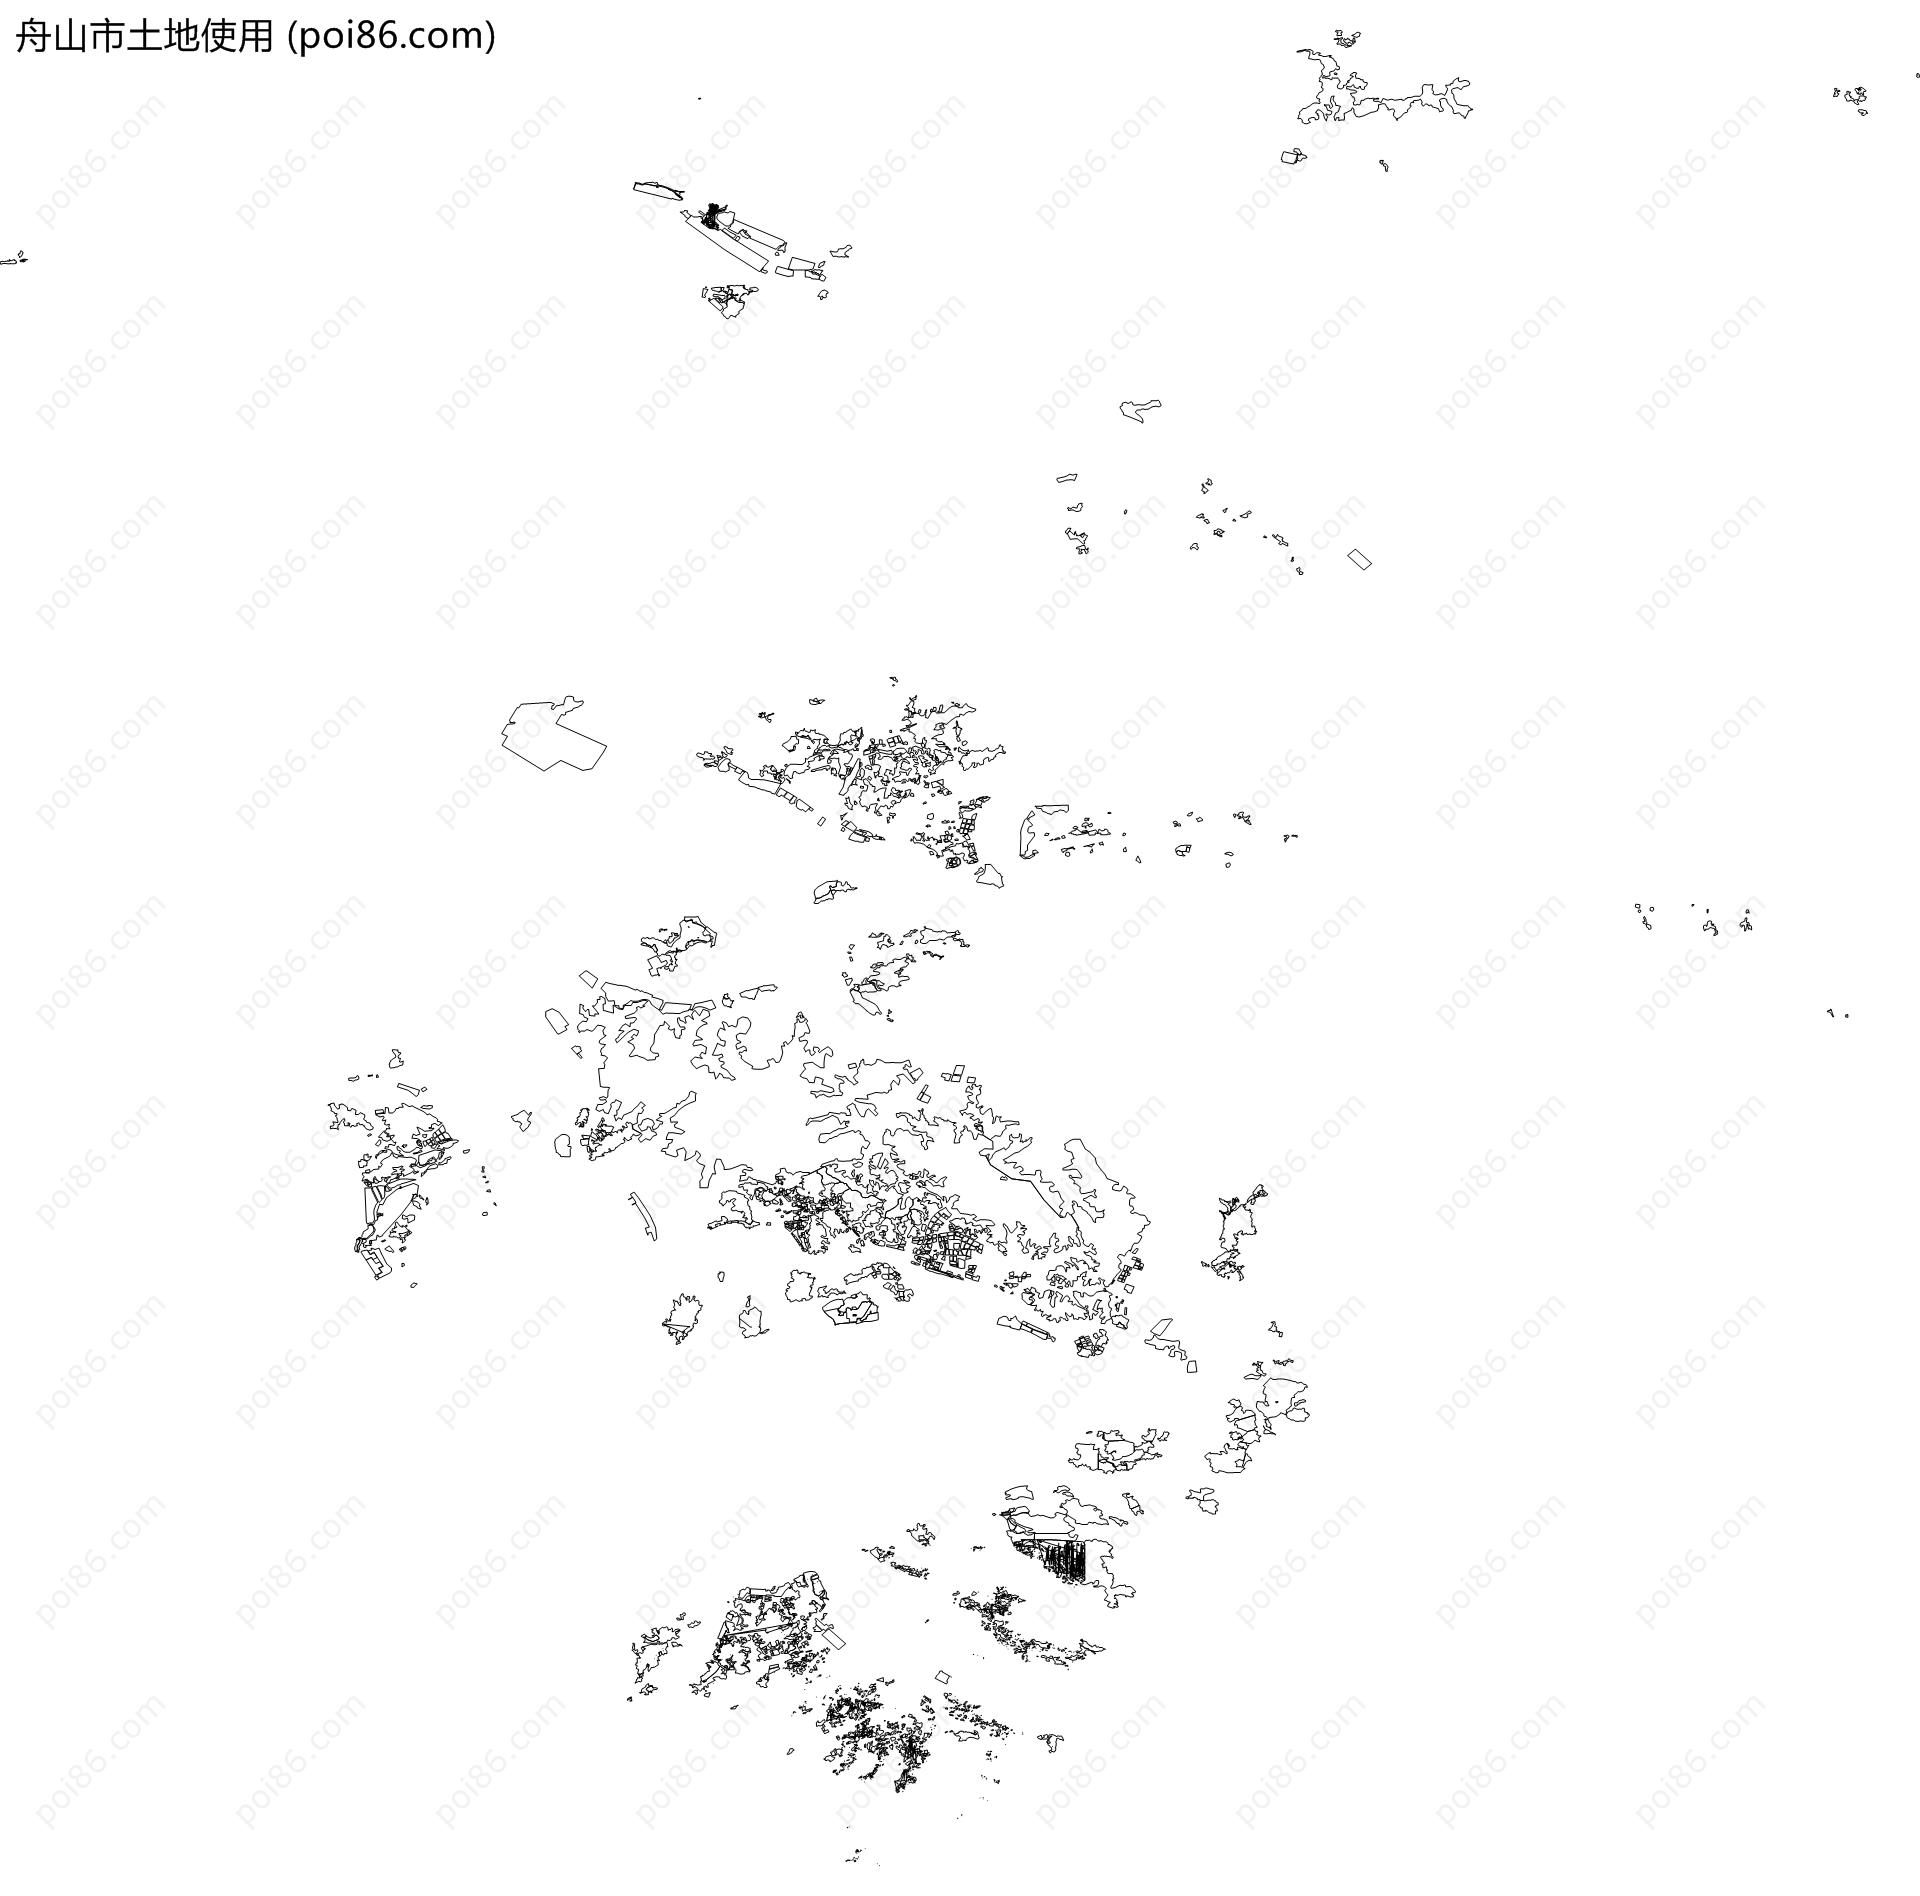 舟山市土地使用地图